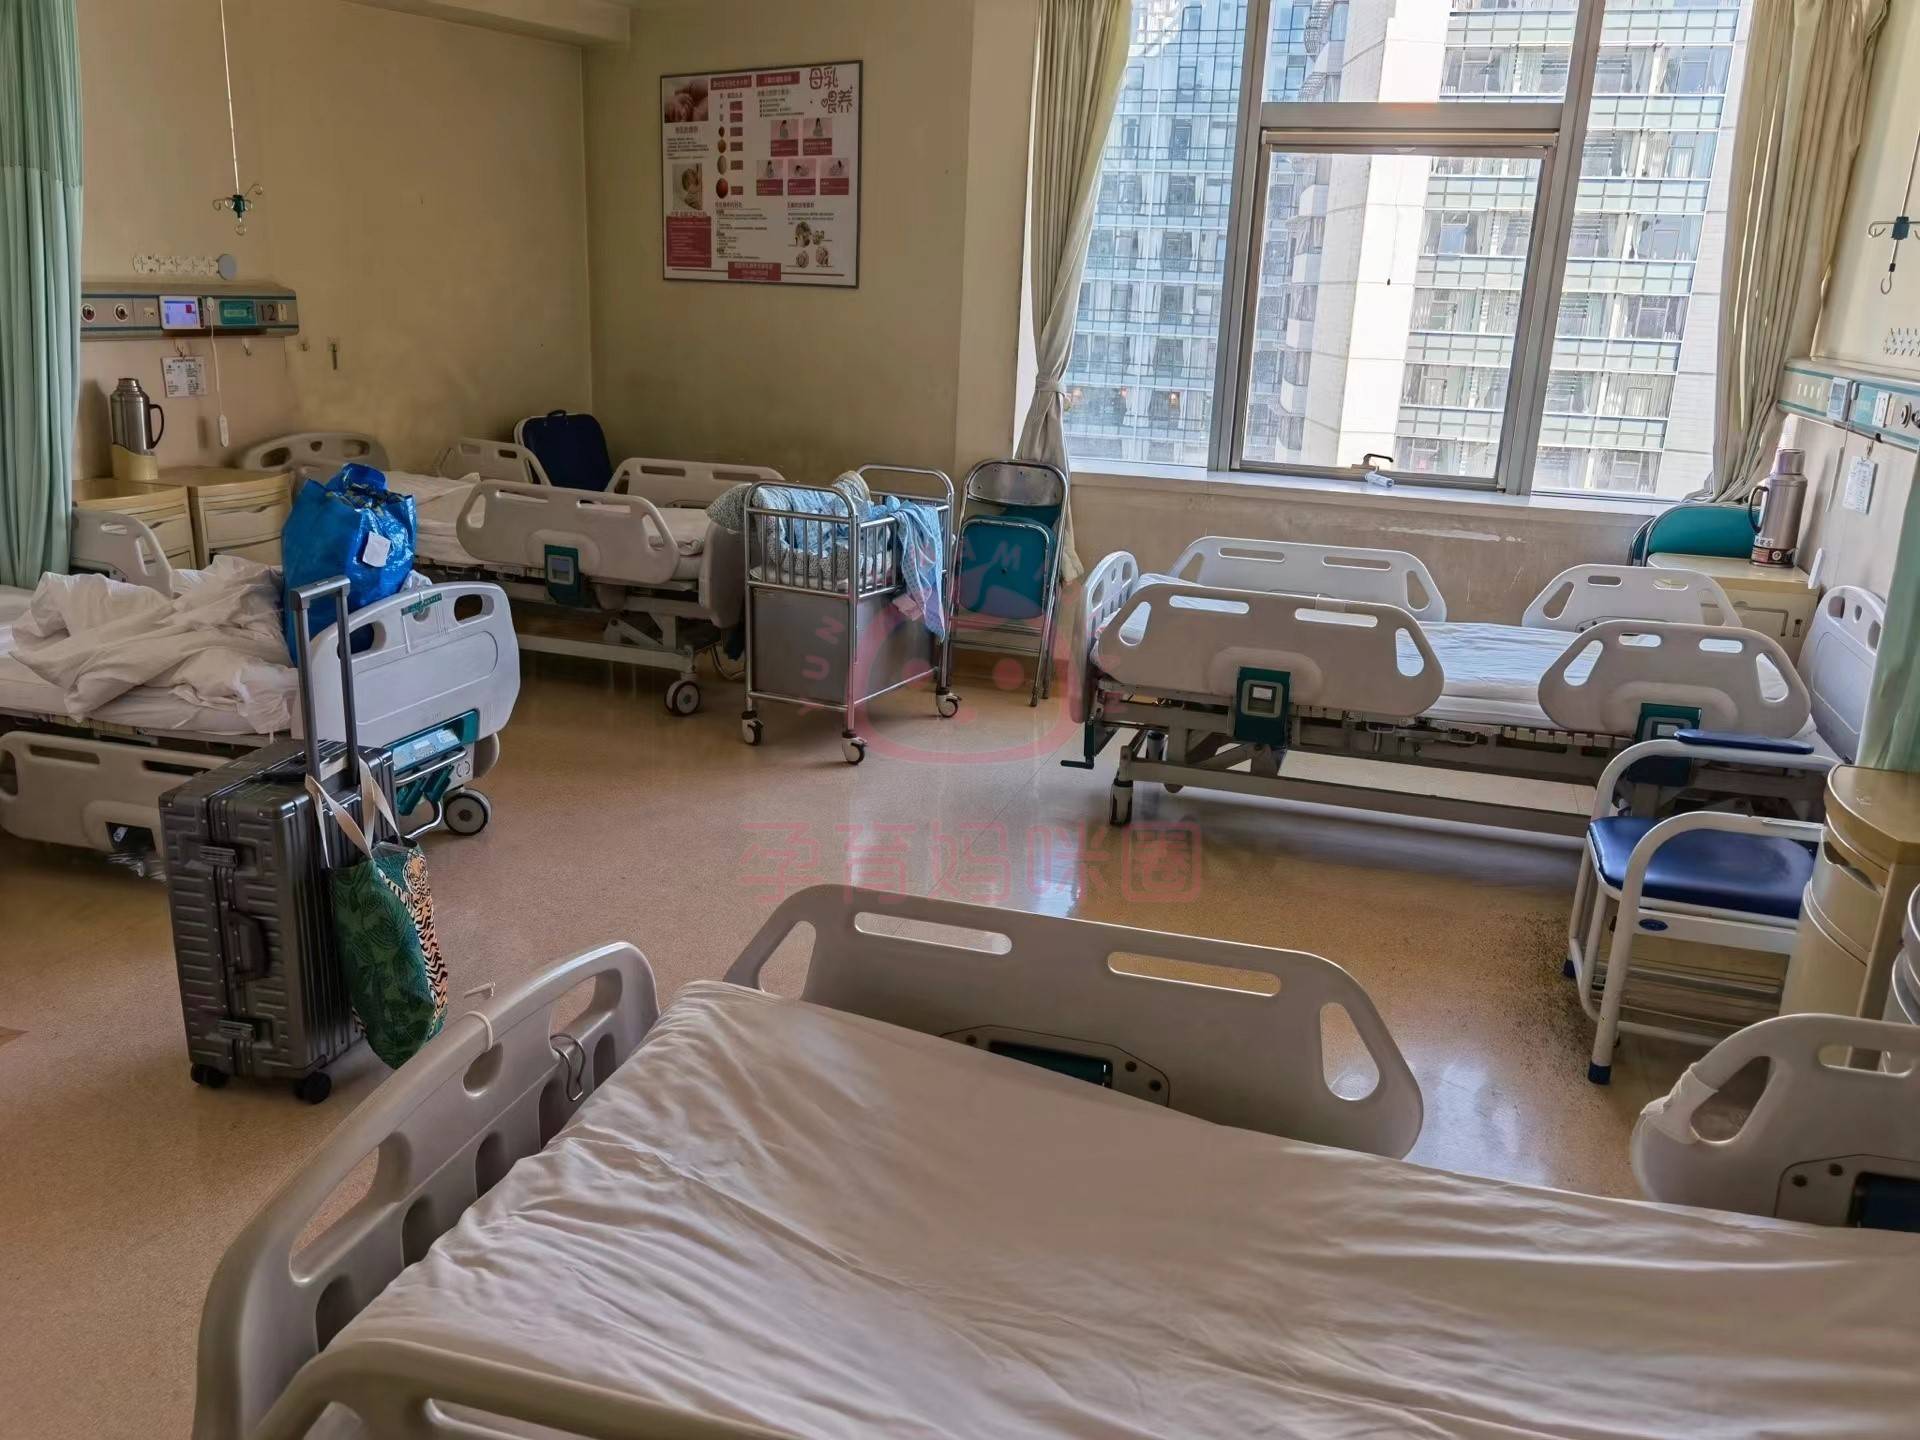 北京301医院润通胶囊图片